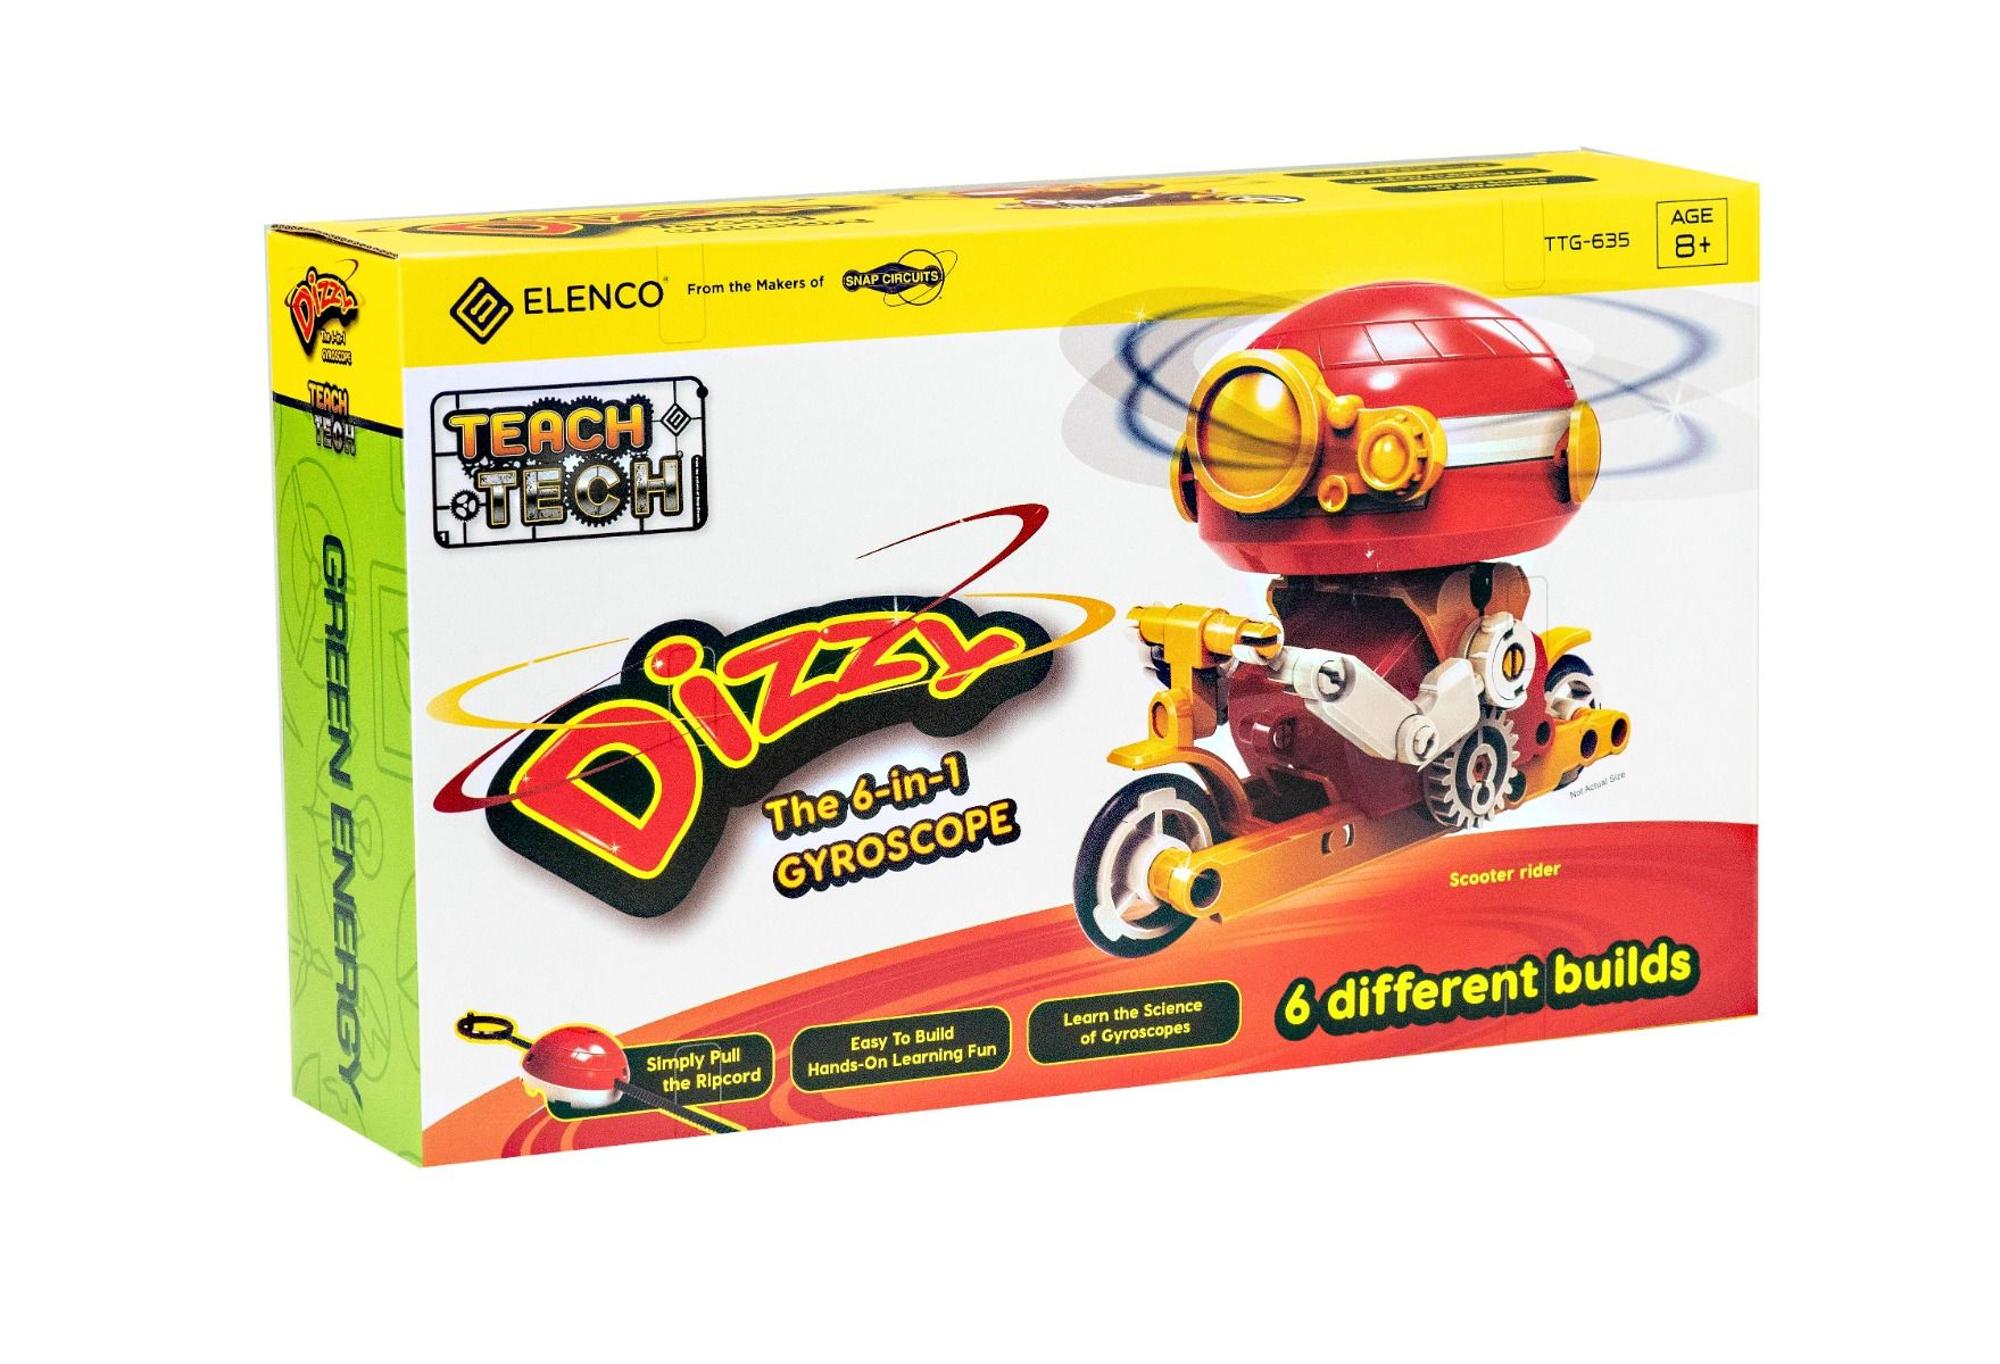 Dizzy The 6-in-1 Gyroscope